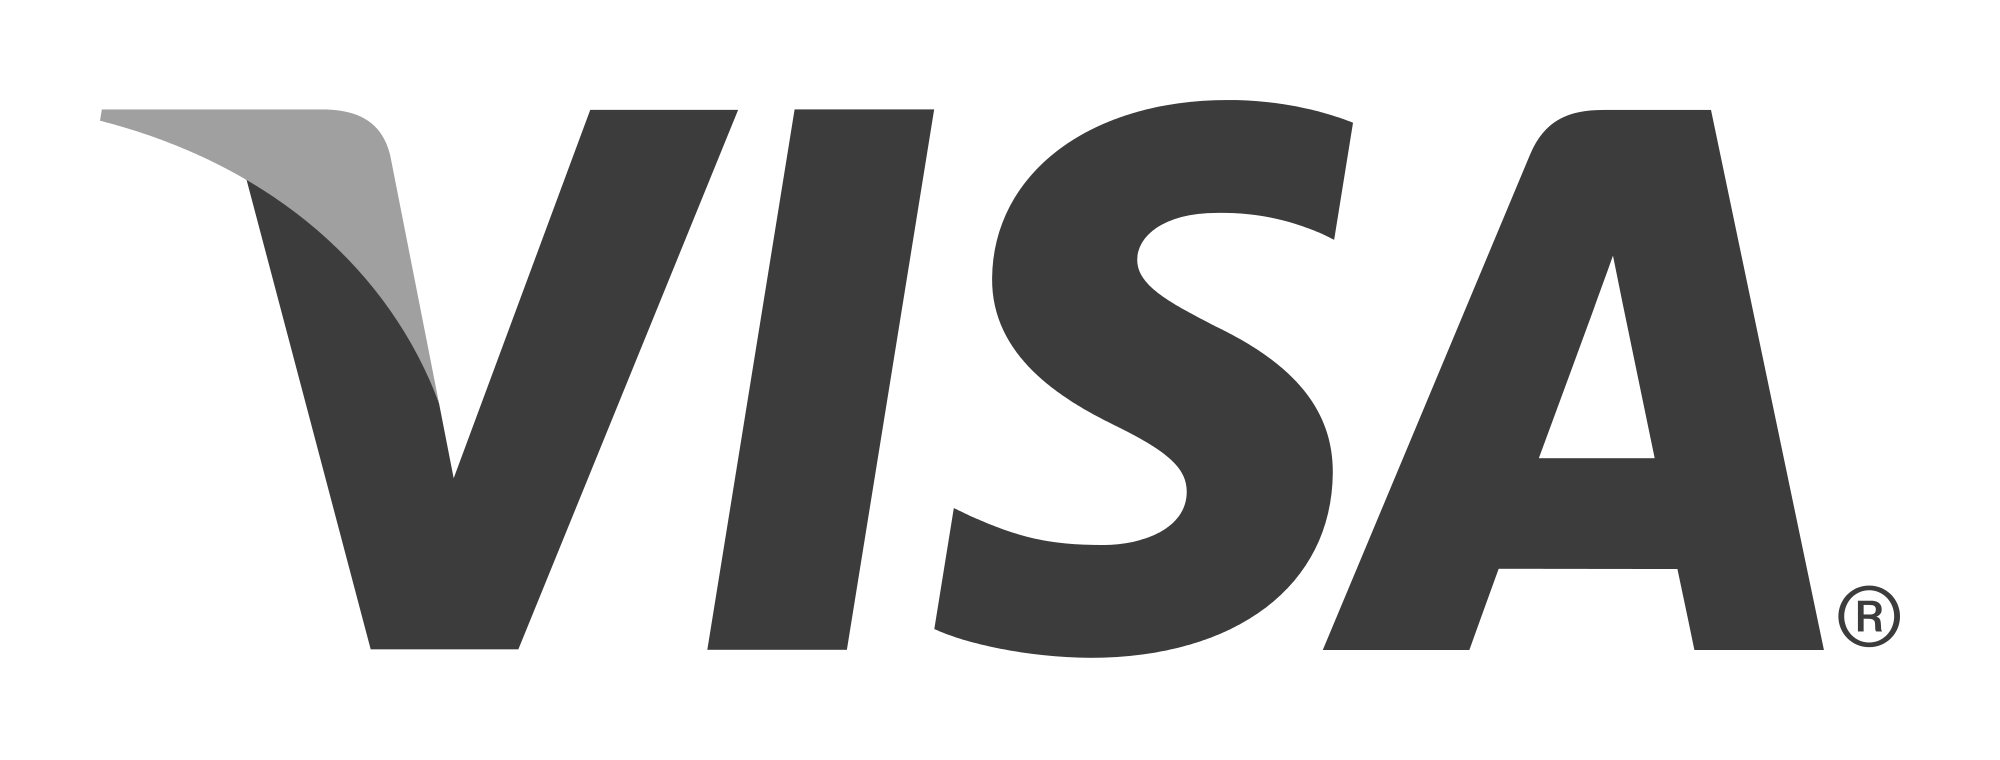 Visa-Logo-Image-0.png